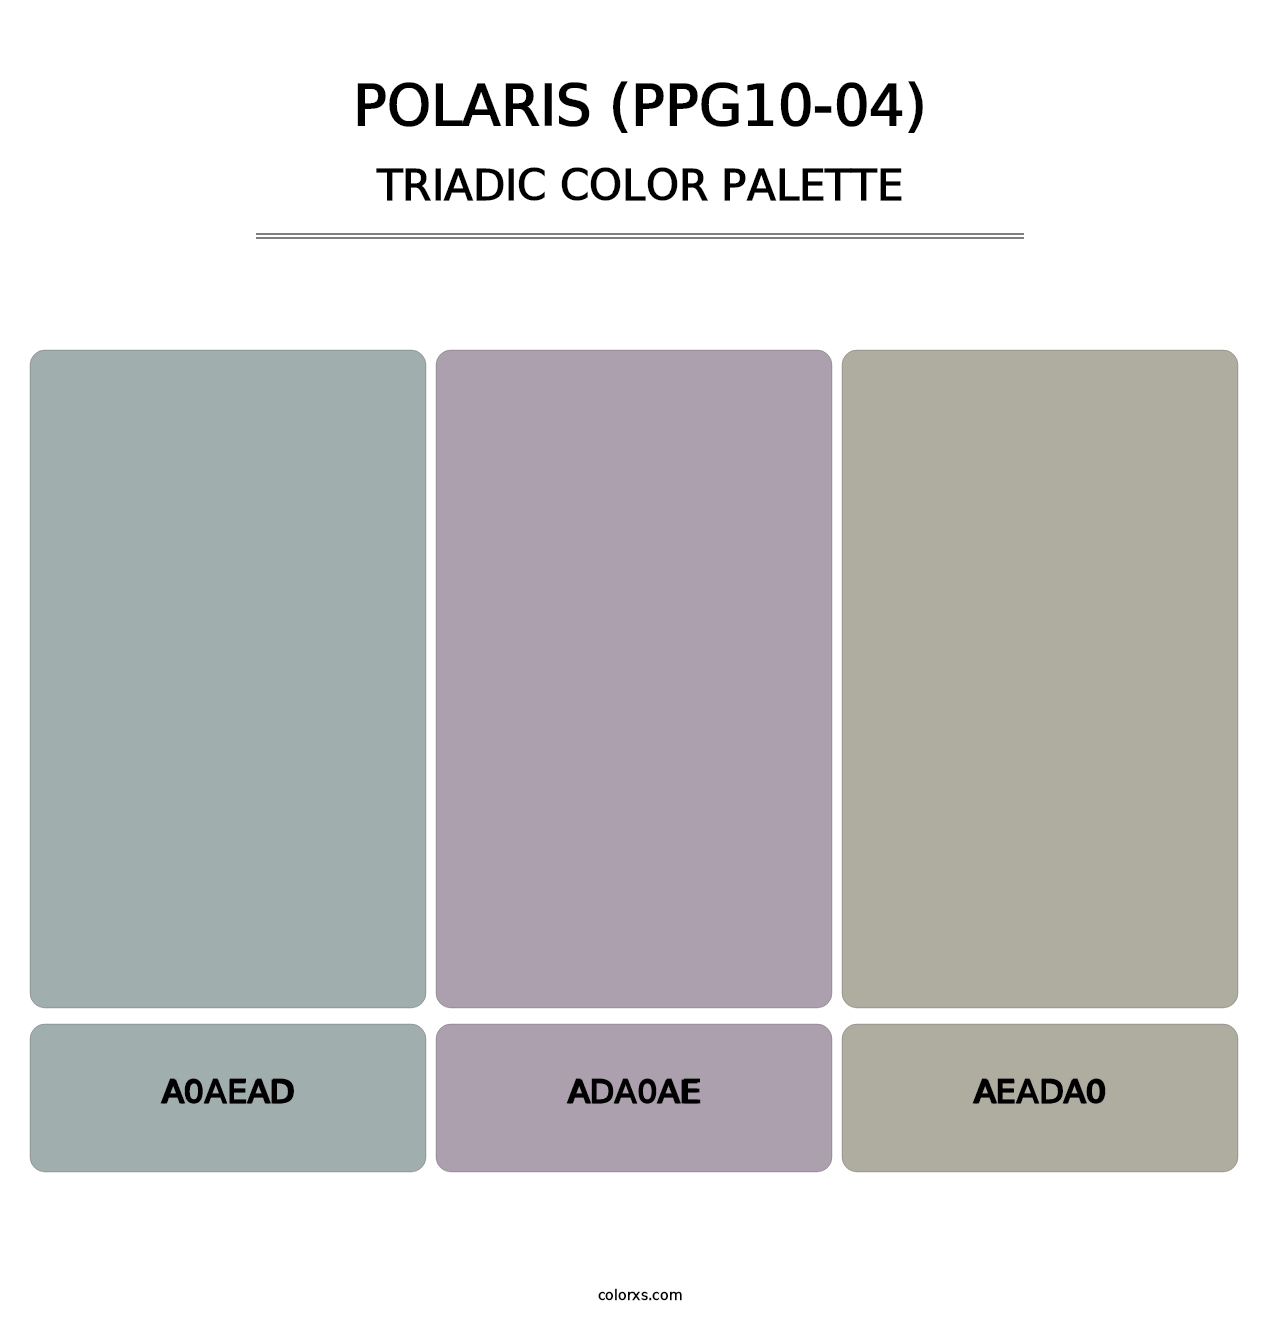 Polaris (PPG10-04) - Triadic Color Palette